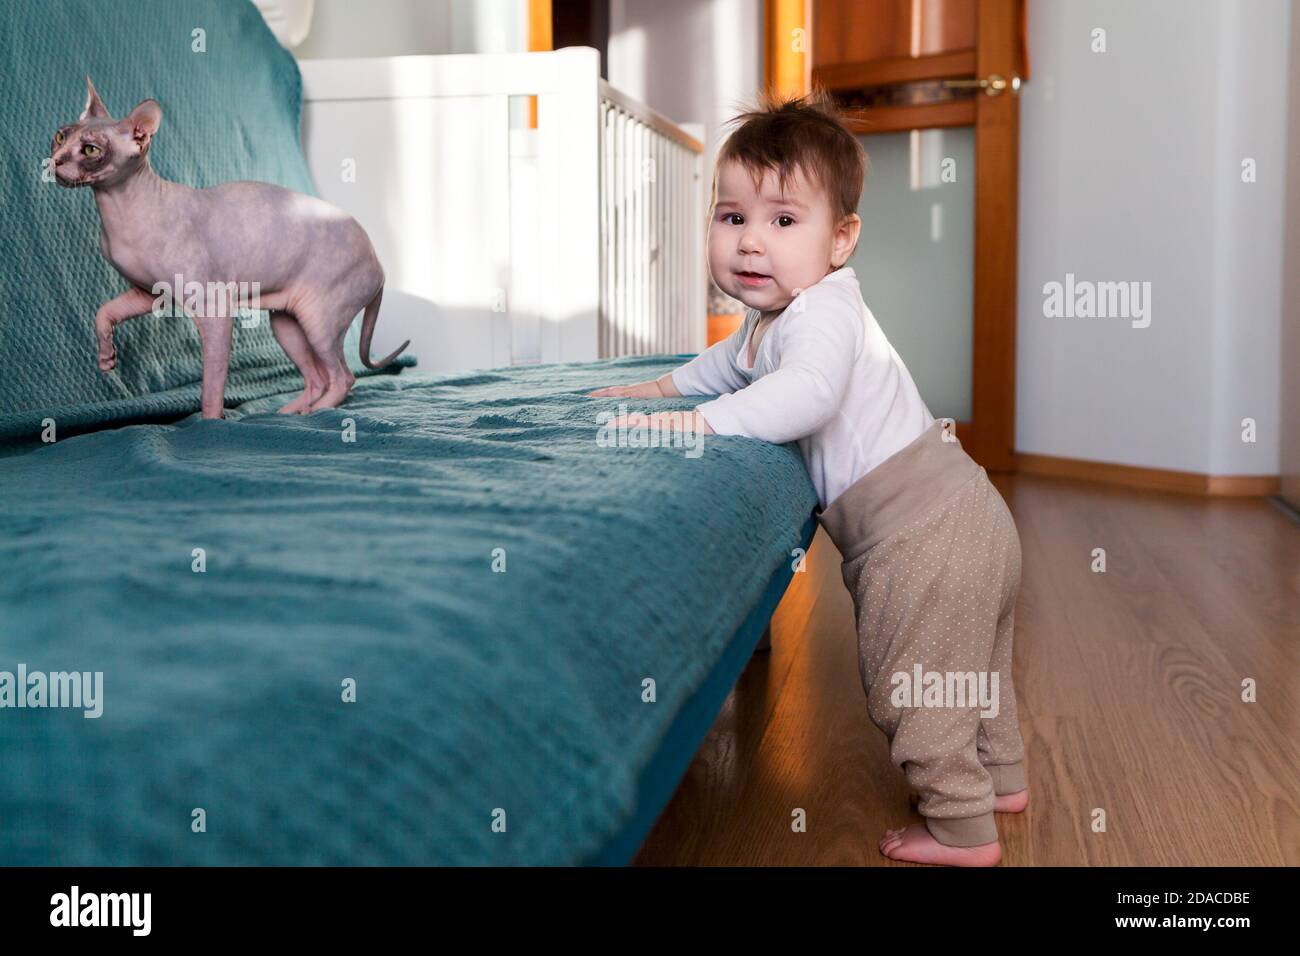 Kleiner kaukasischer Junge, der mit sphynx Katze spielt, Kleinkind, das neben der Couch im Wohnzimmer steht Stockfoto